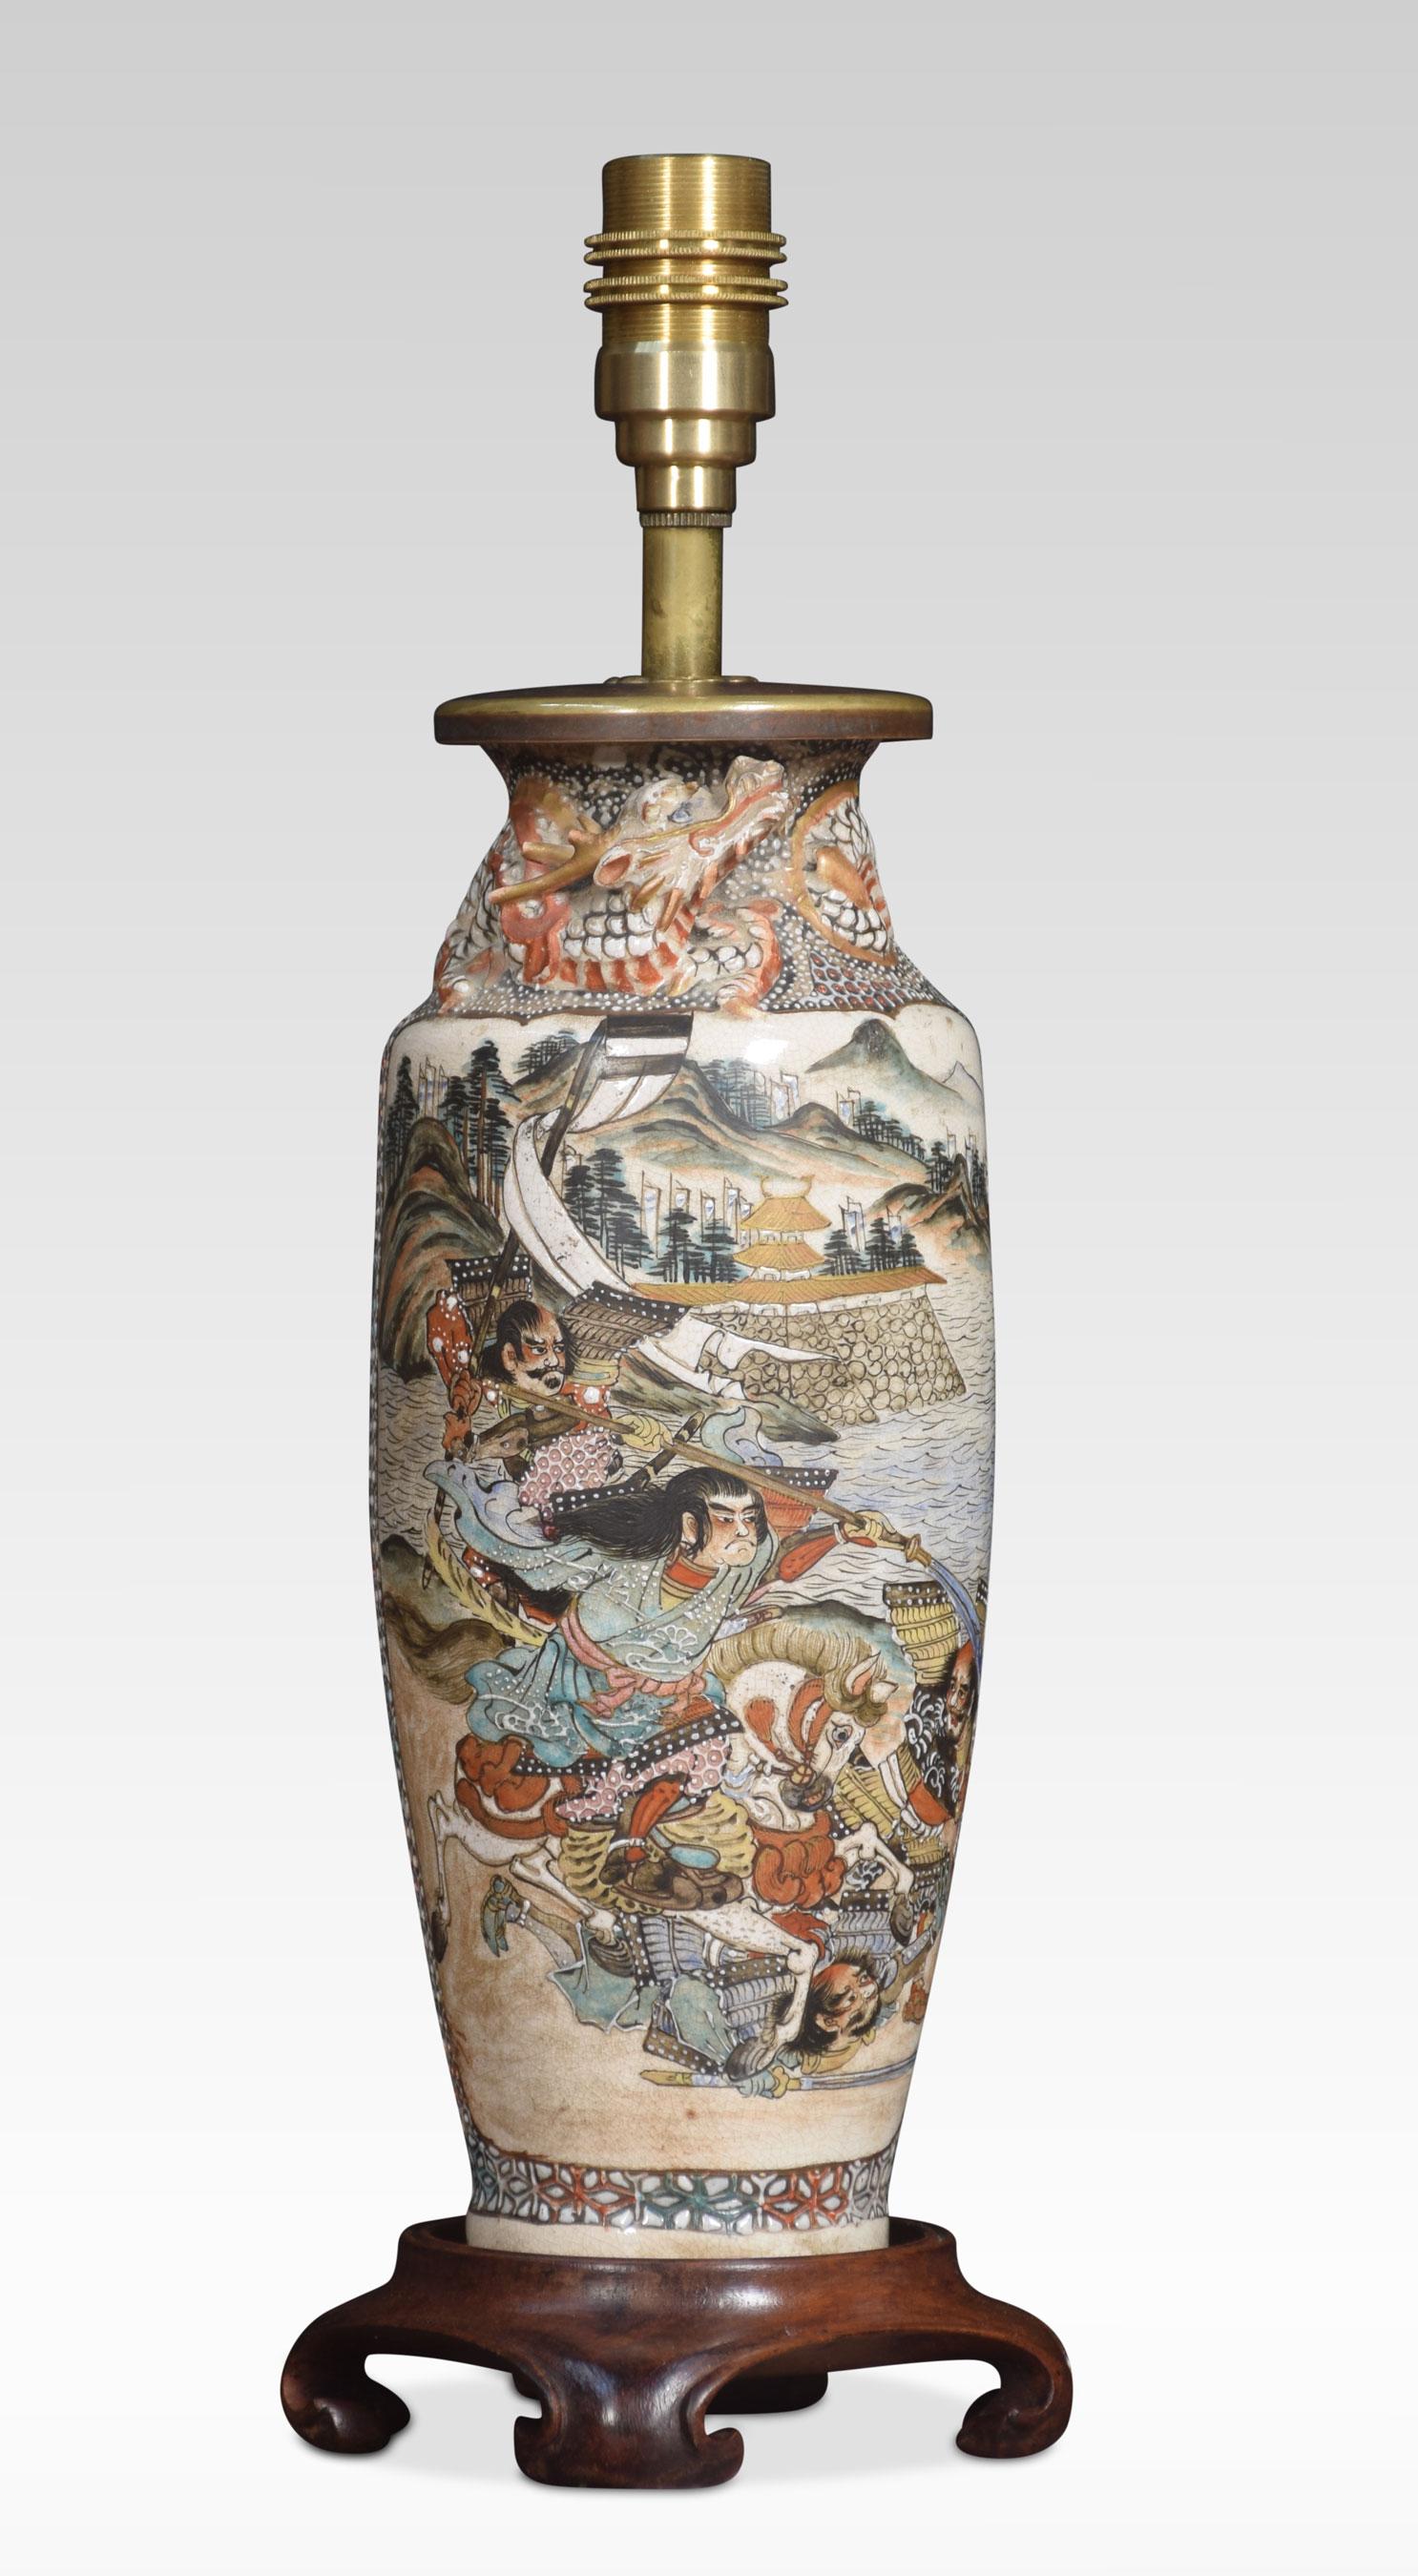 Paire de lampes vases en porcelaine de Satsuma. Les panneaux insérés représentent des paysages japonais avec un décor de dragon moulé. Le tout sur des bases en bois dur.
Dimensions
Hauteur 14.5 pouces
Largeur 4.5 pouces
Profondeur 4.5 pouces.